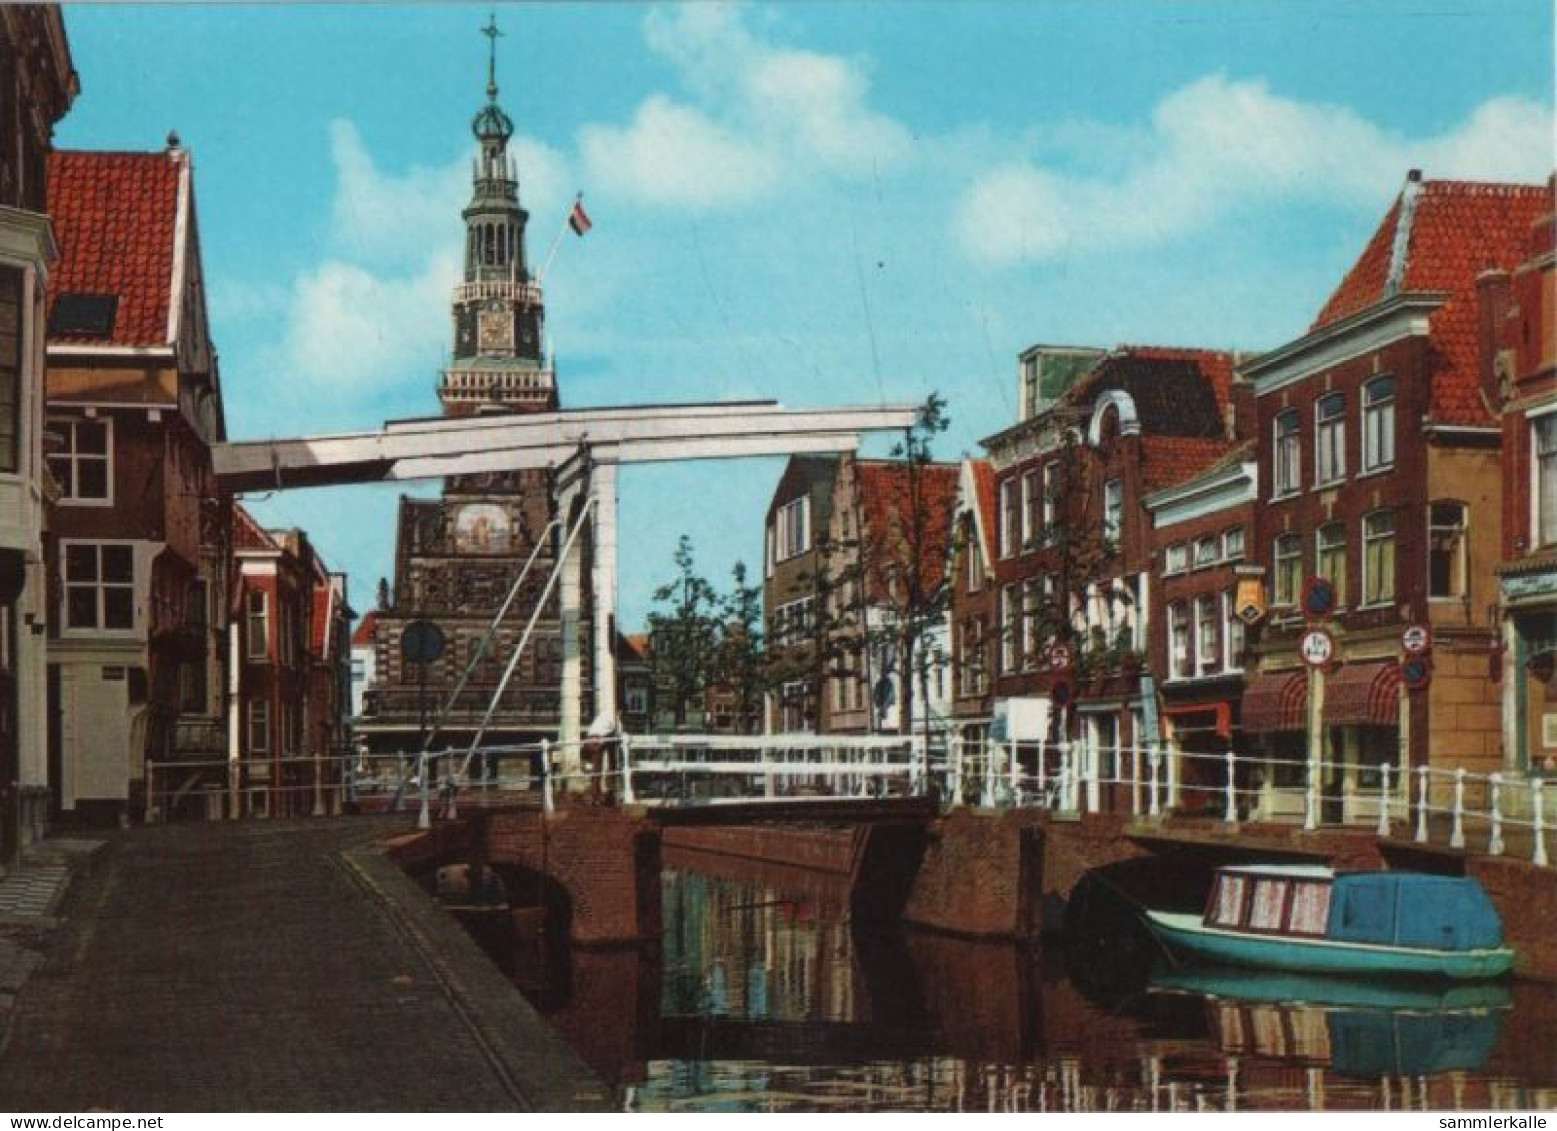 106469 - Niederlande - Alkmaar - Kuipersbrug - Ca. 1980 - Alkmaar